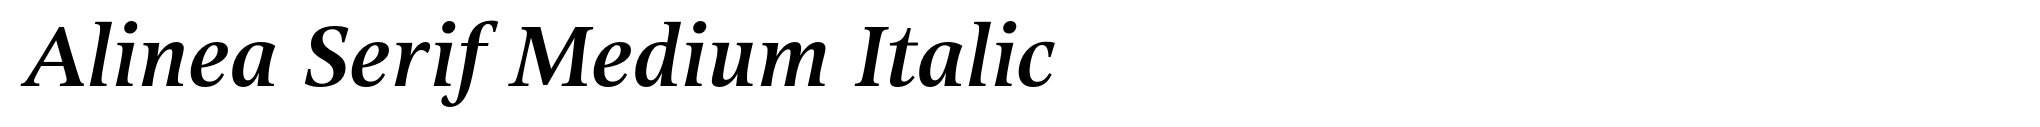 Alinea Serif Medium Italic image